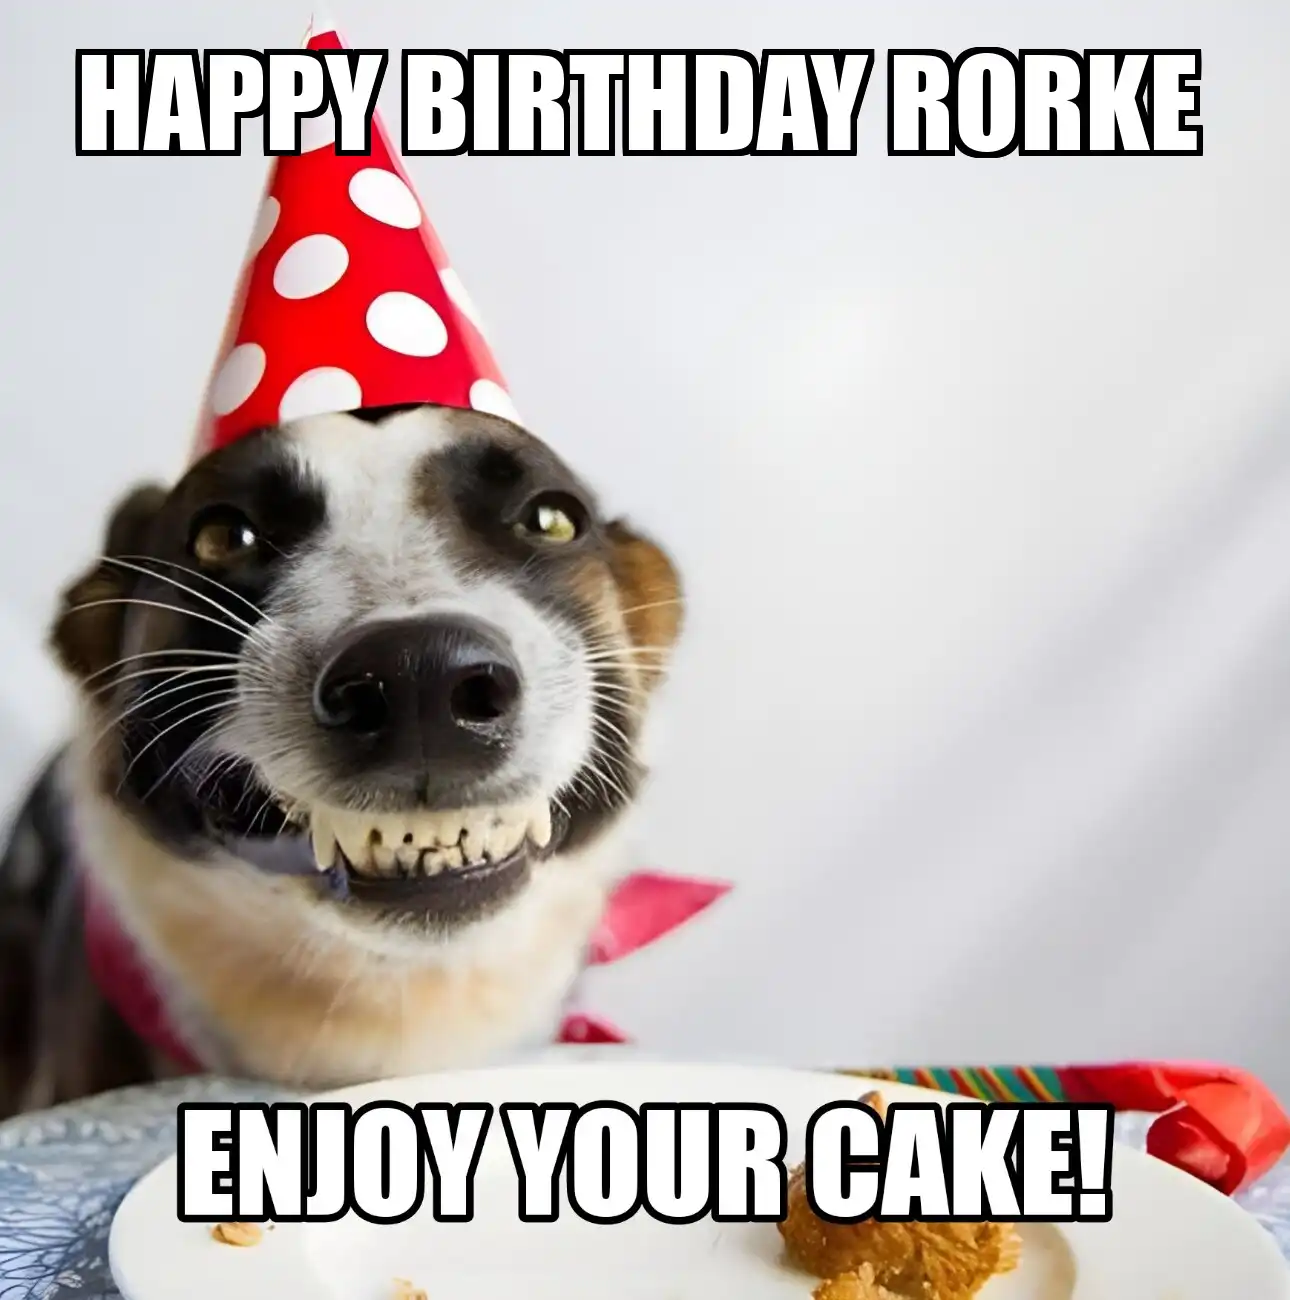 Happy Birthday Rorke Enjoy Your Cake Dog Meme